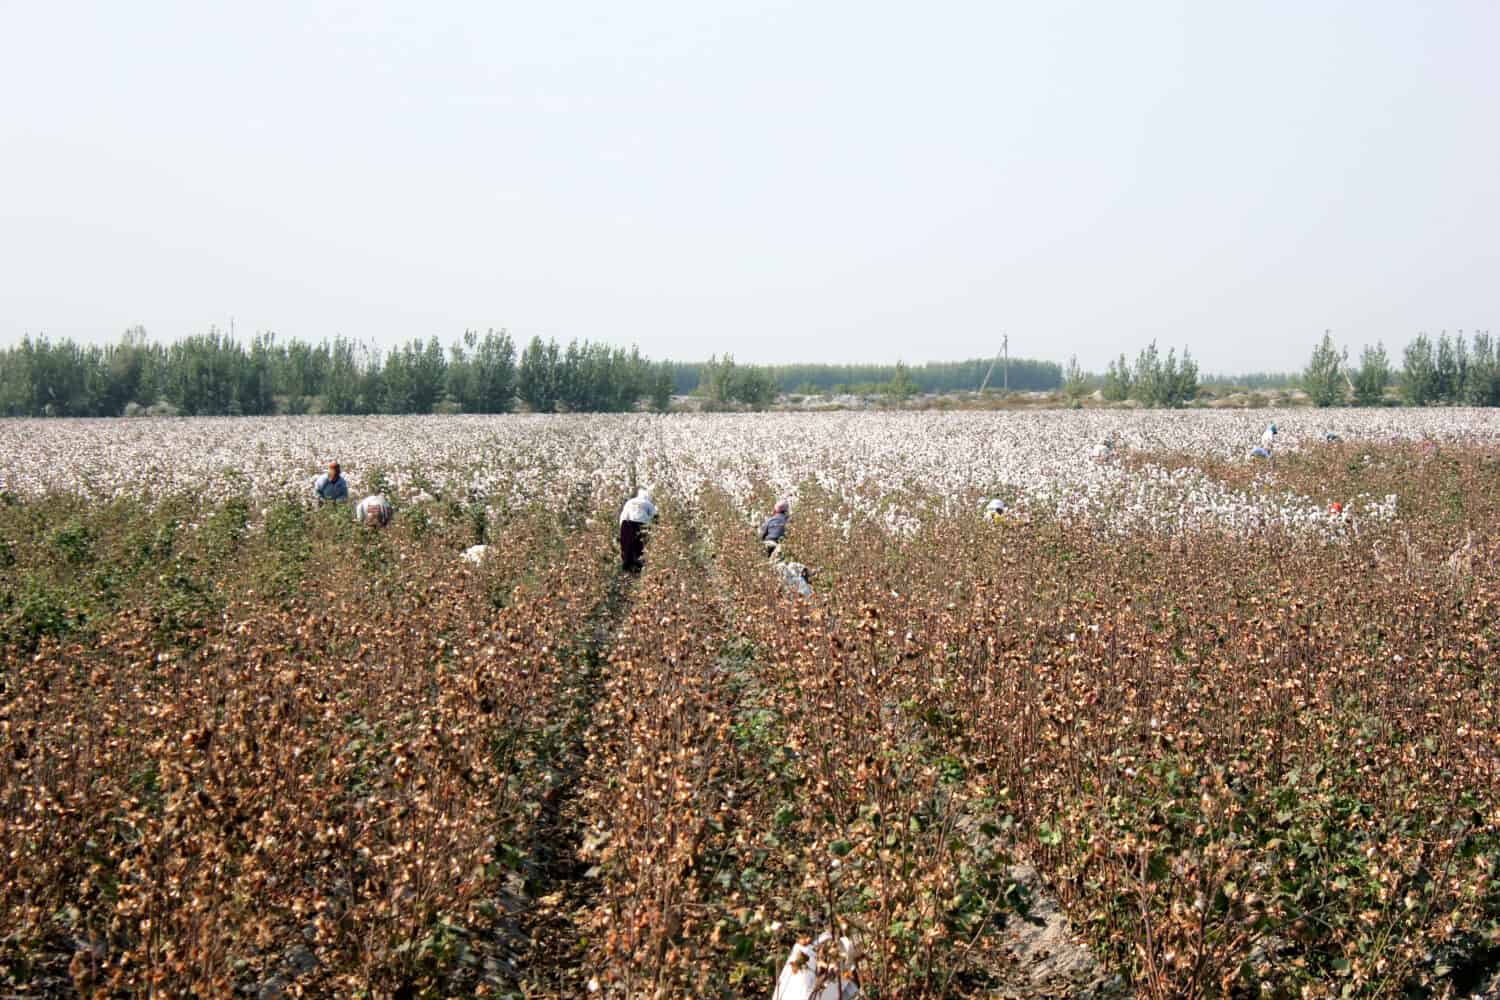 People pick cotton in the field in Uzbekistan